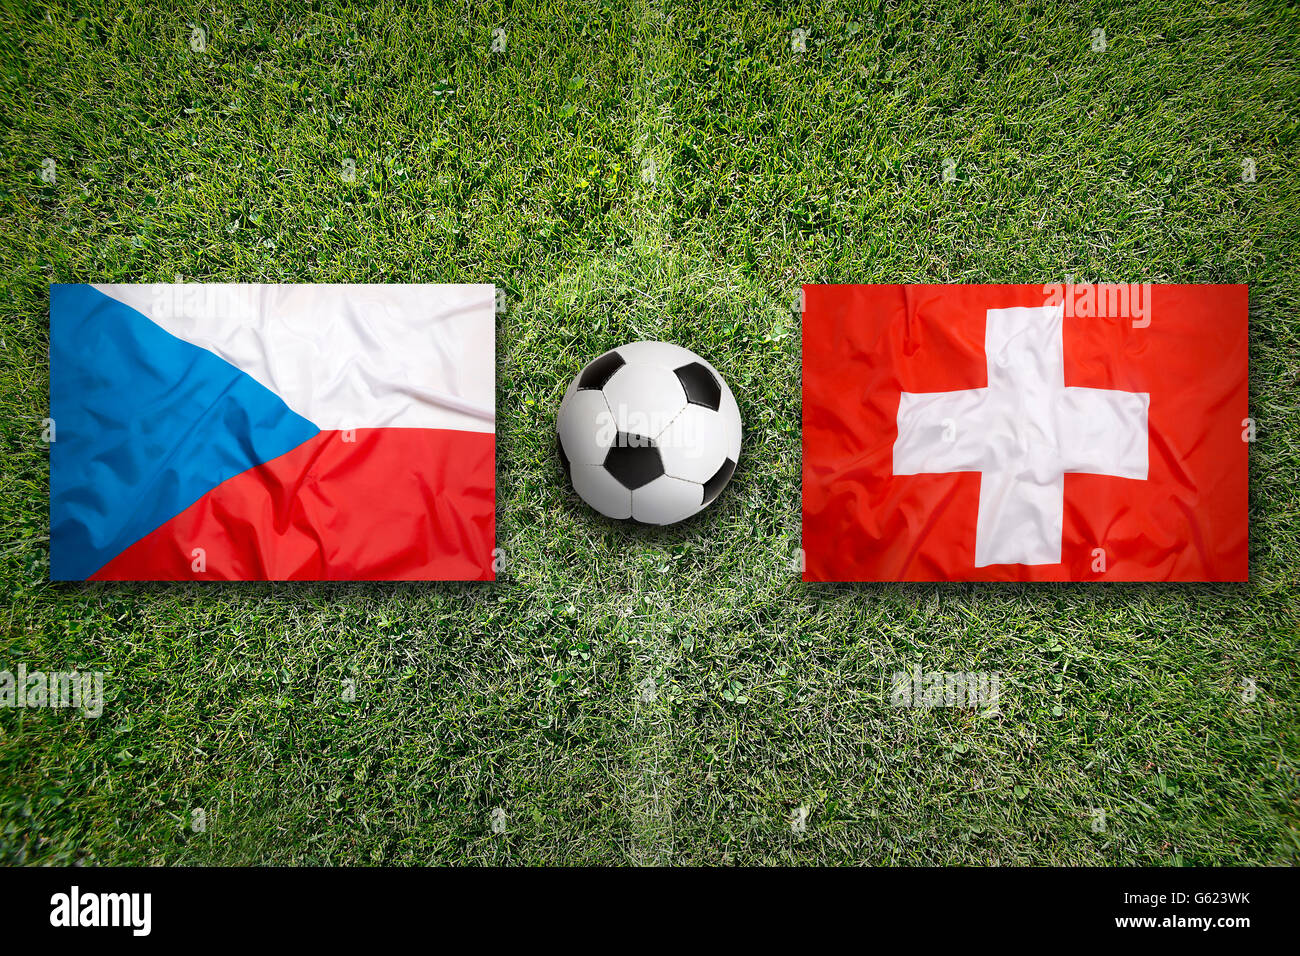 Tschechische Republik vs. Schweiz Fahnen auf grüne Fußballplatz Stockfoto